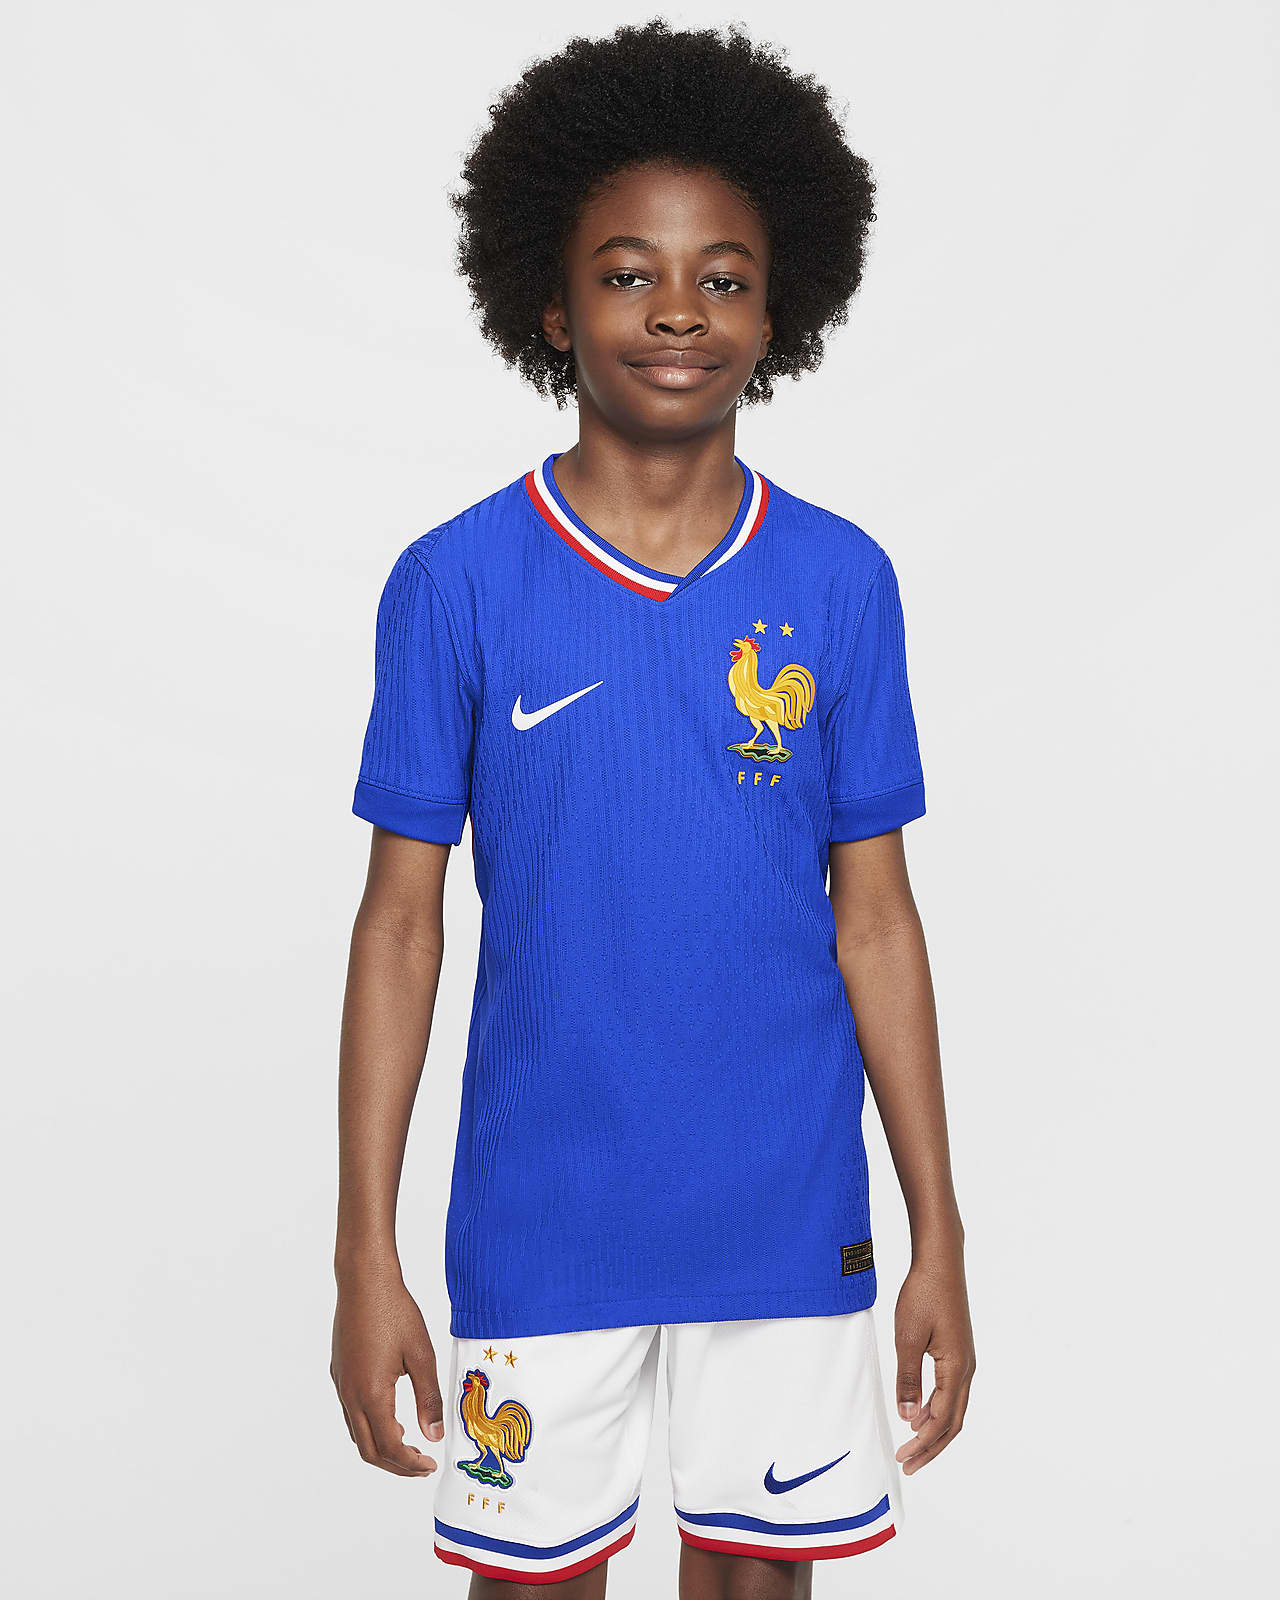 Fotbalový domácí zápasový dres Nike Dri-FIT ADV Authentic FFF (mužský tým) 2024/25 pro větší děti